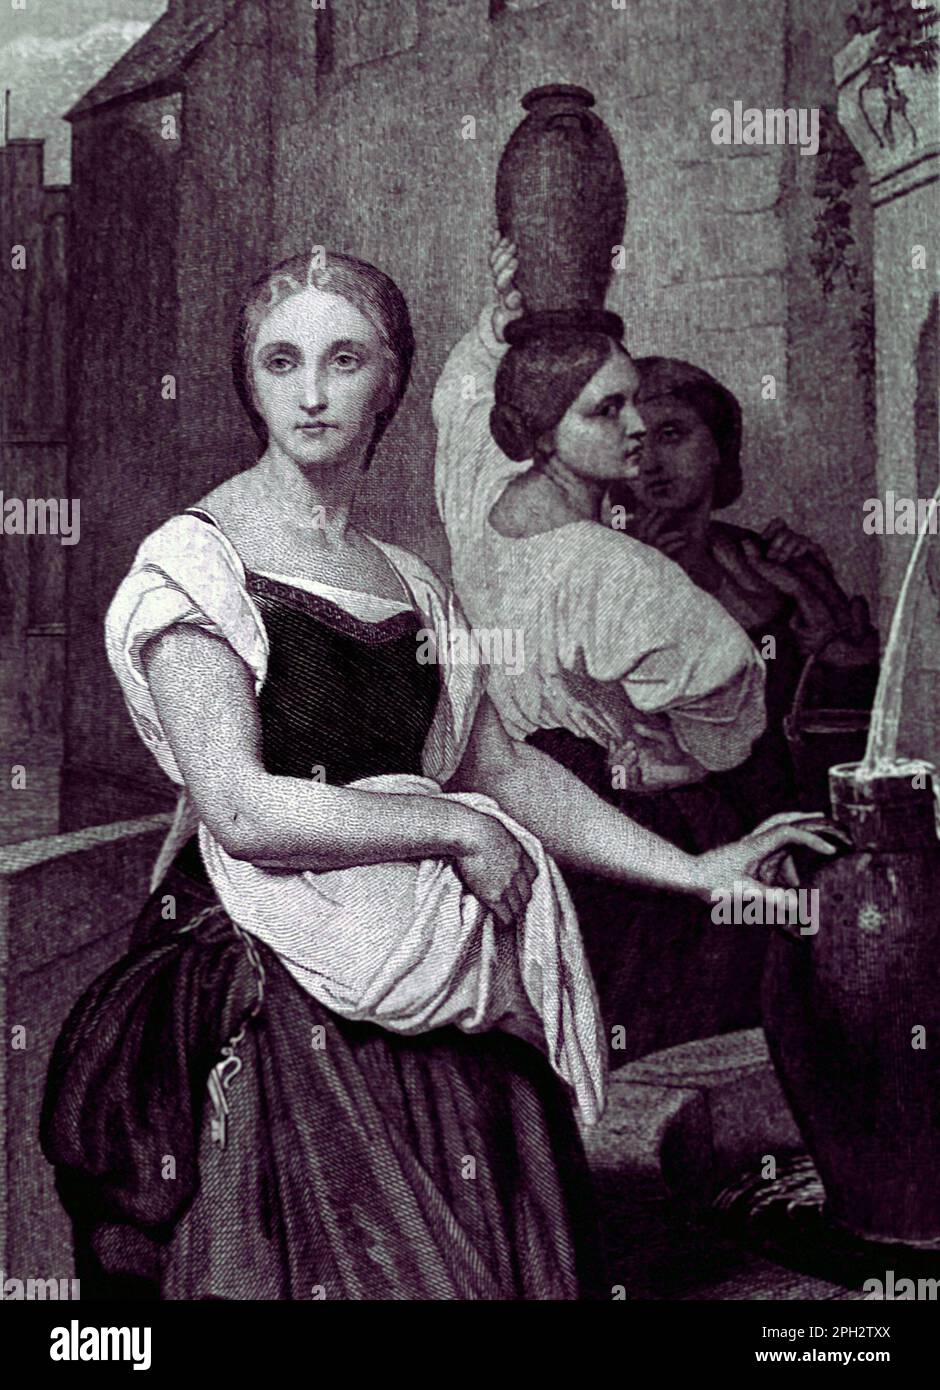 Marguerite at the Fountain, ein Druck aus der George Barrie International Gallery of Prints, veröffentlicht c 1886. Aus einem Gemälde von Ary Scheffer 1795-1858. Eingraviert von Leopold Flameng. Stockfoto